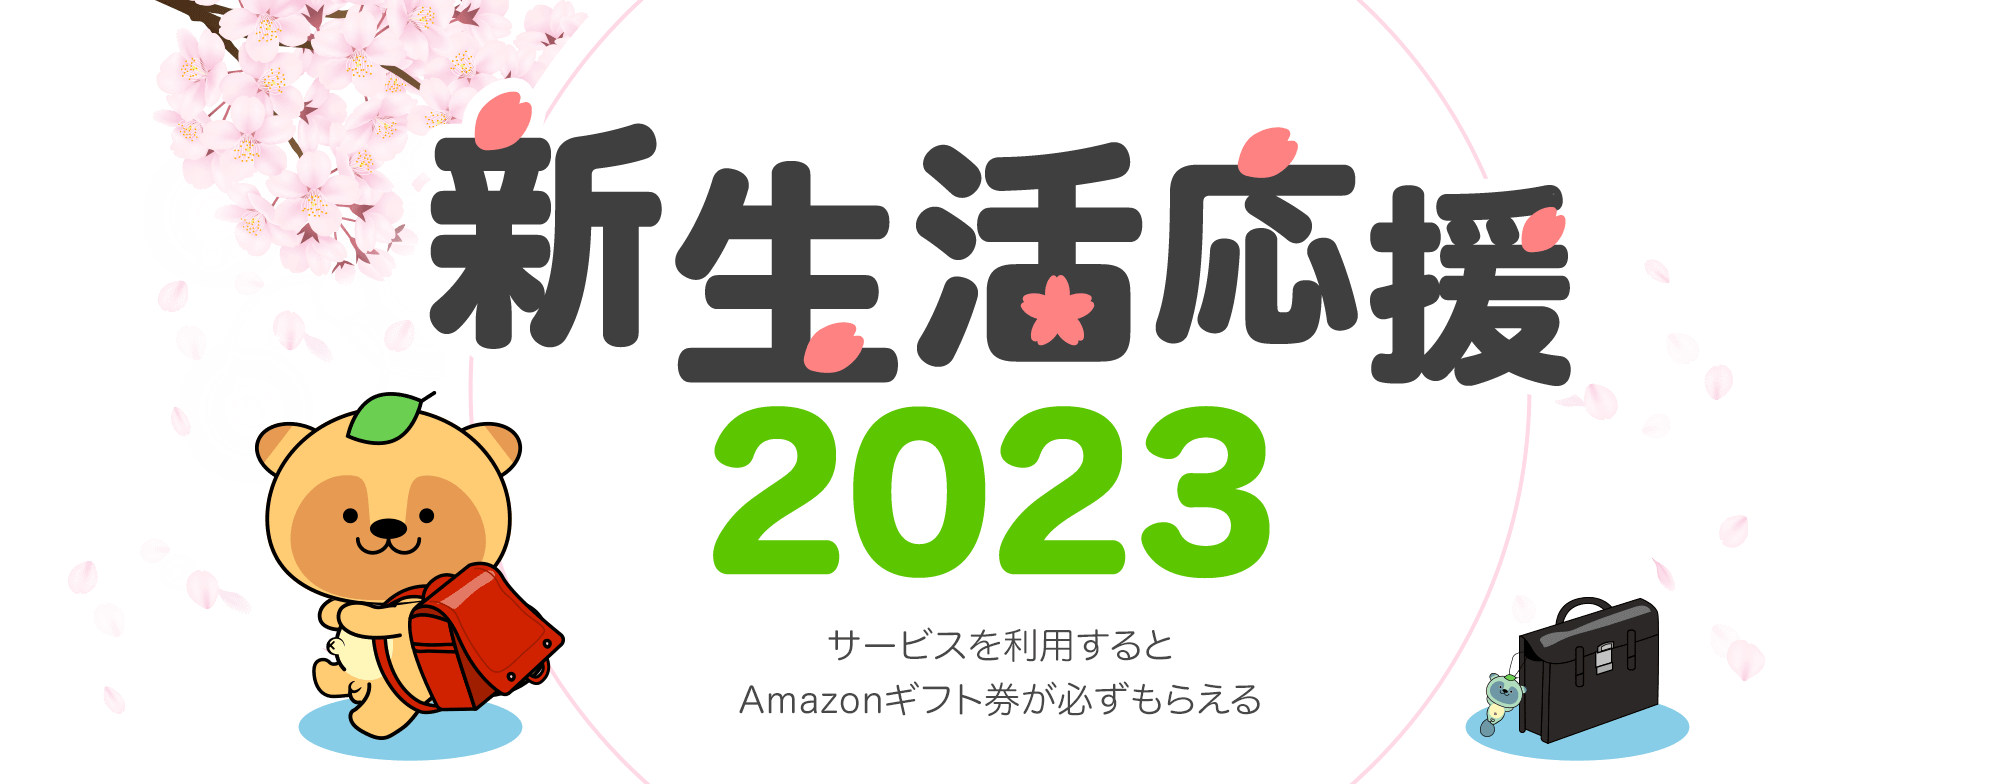 新生活応援2023